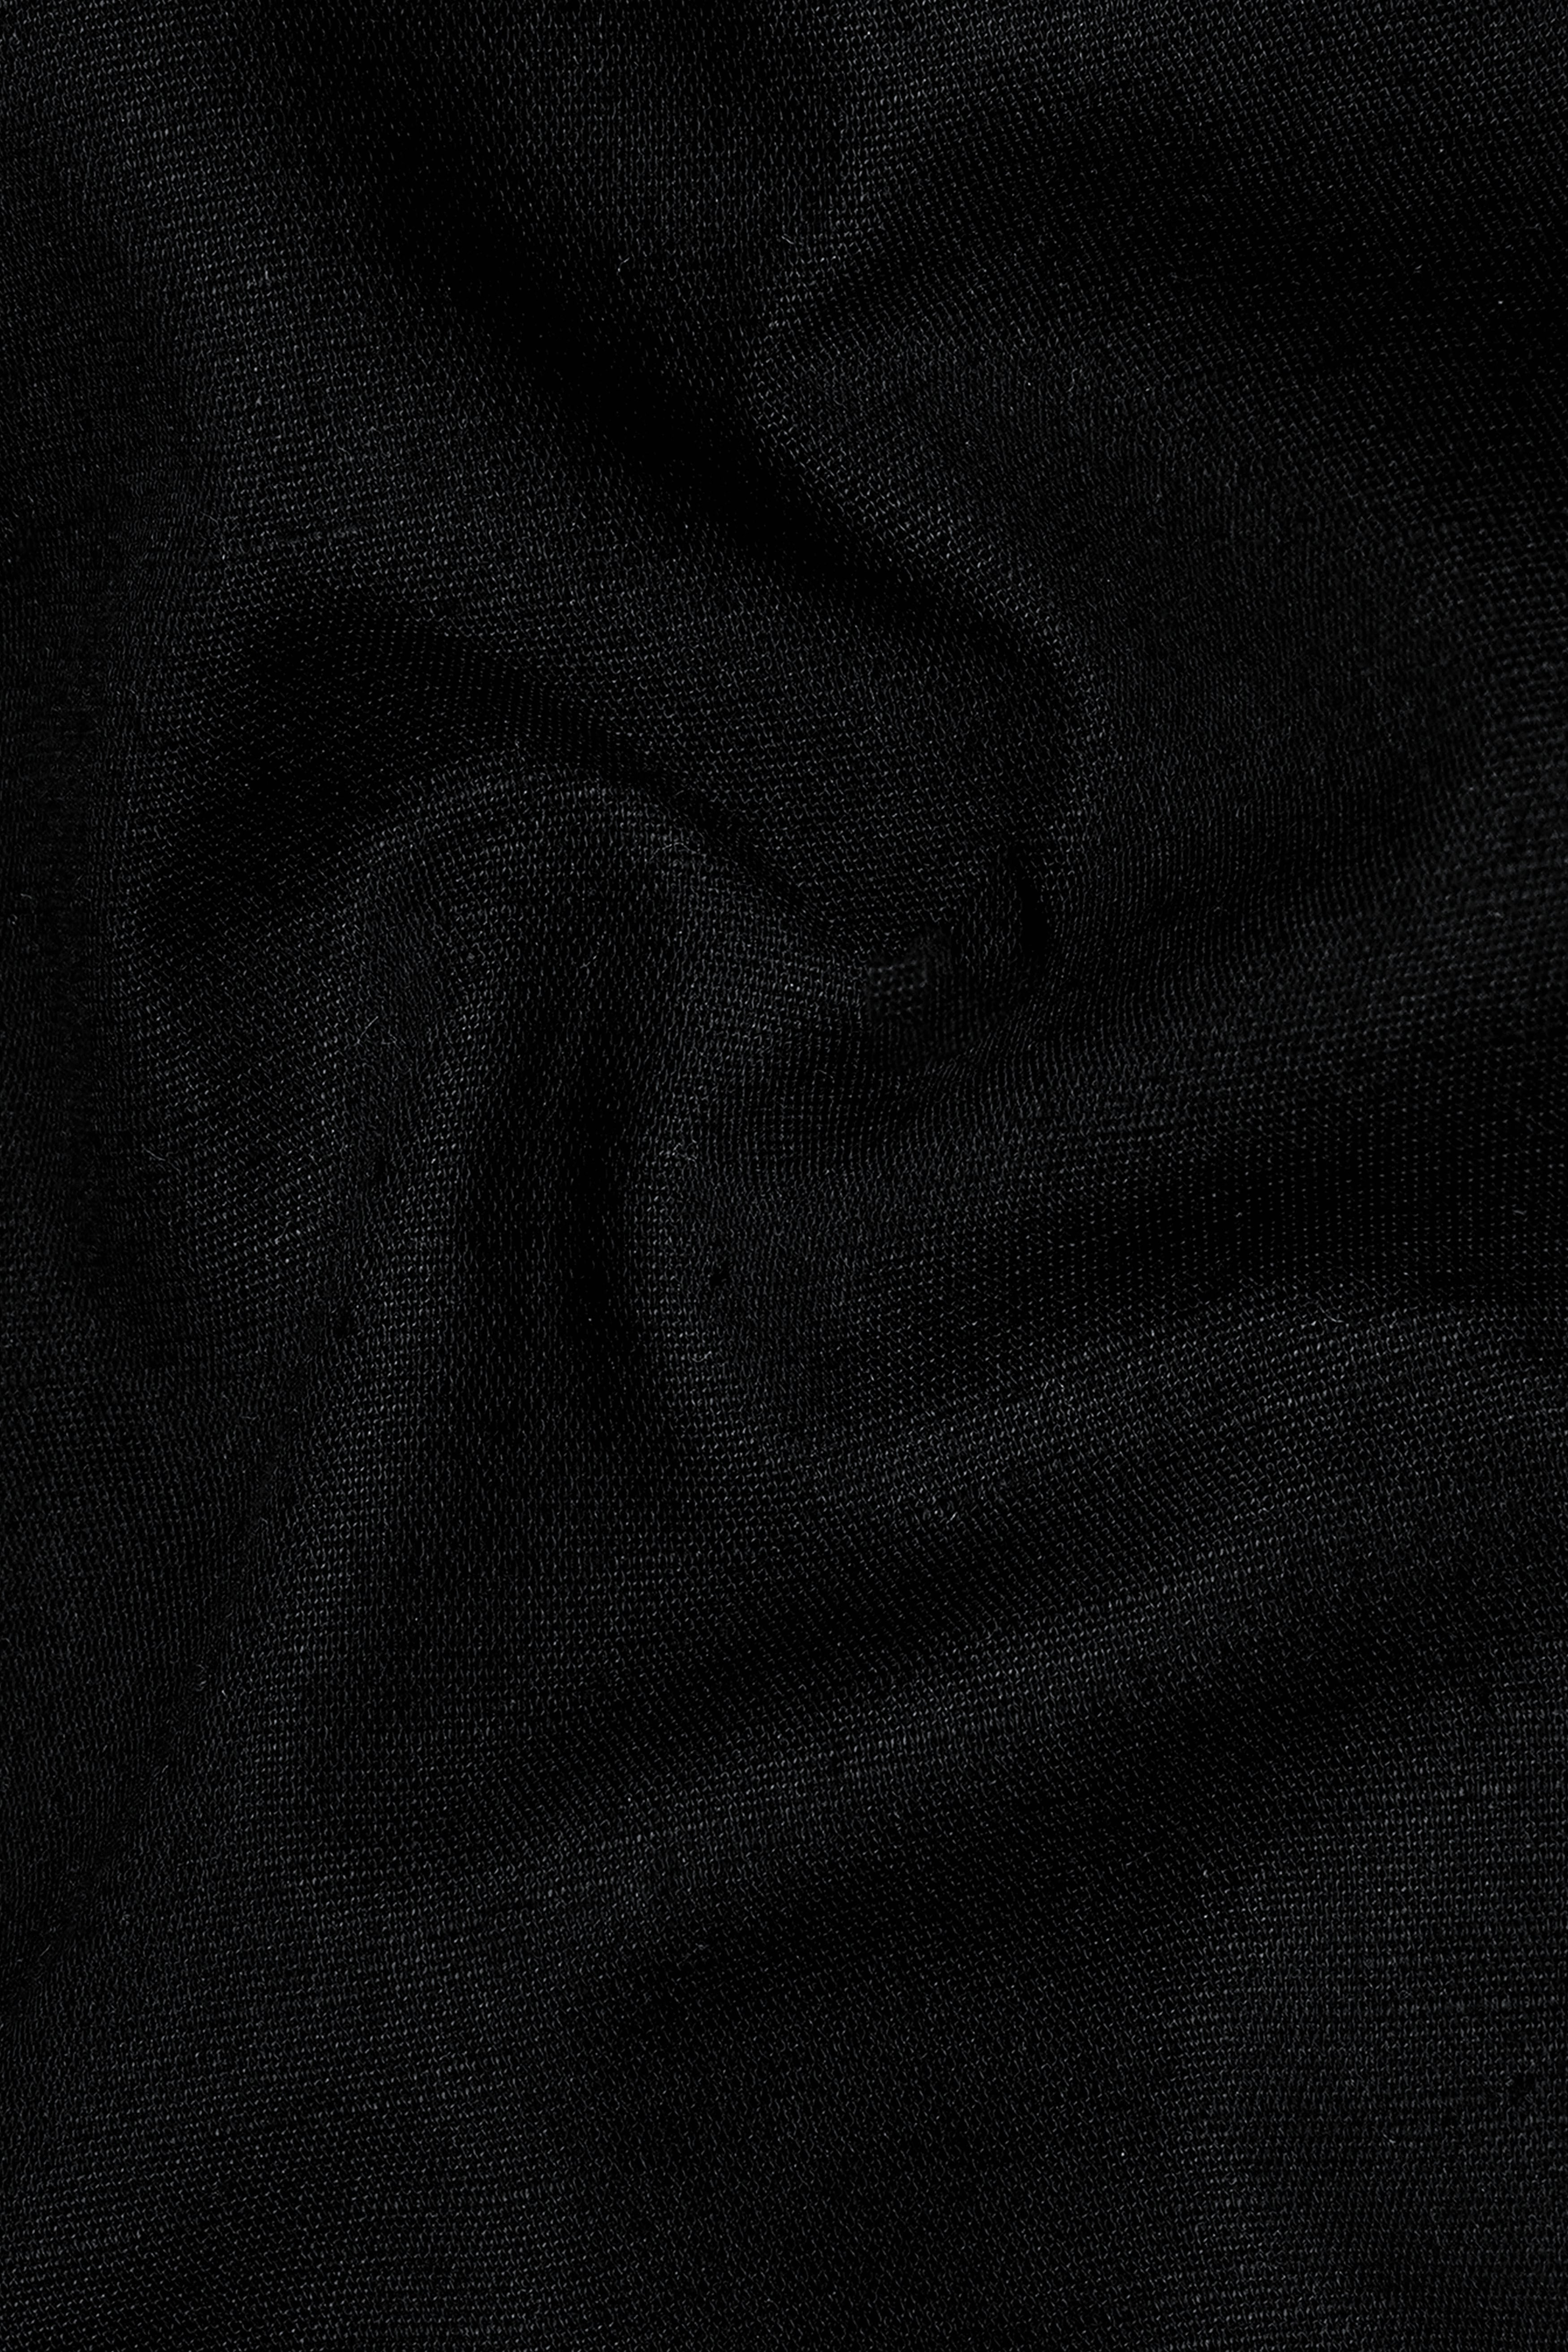 Midnight Black Luxurious Linen SHIRT